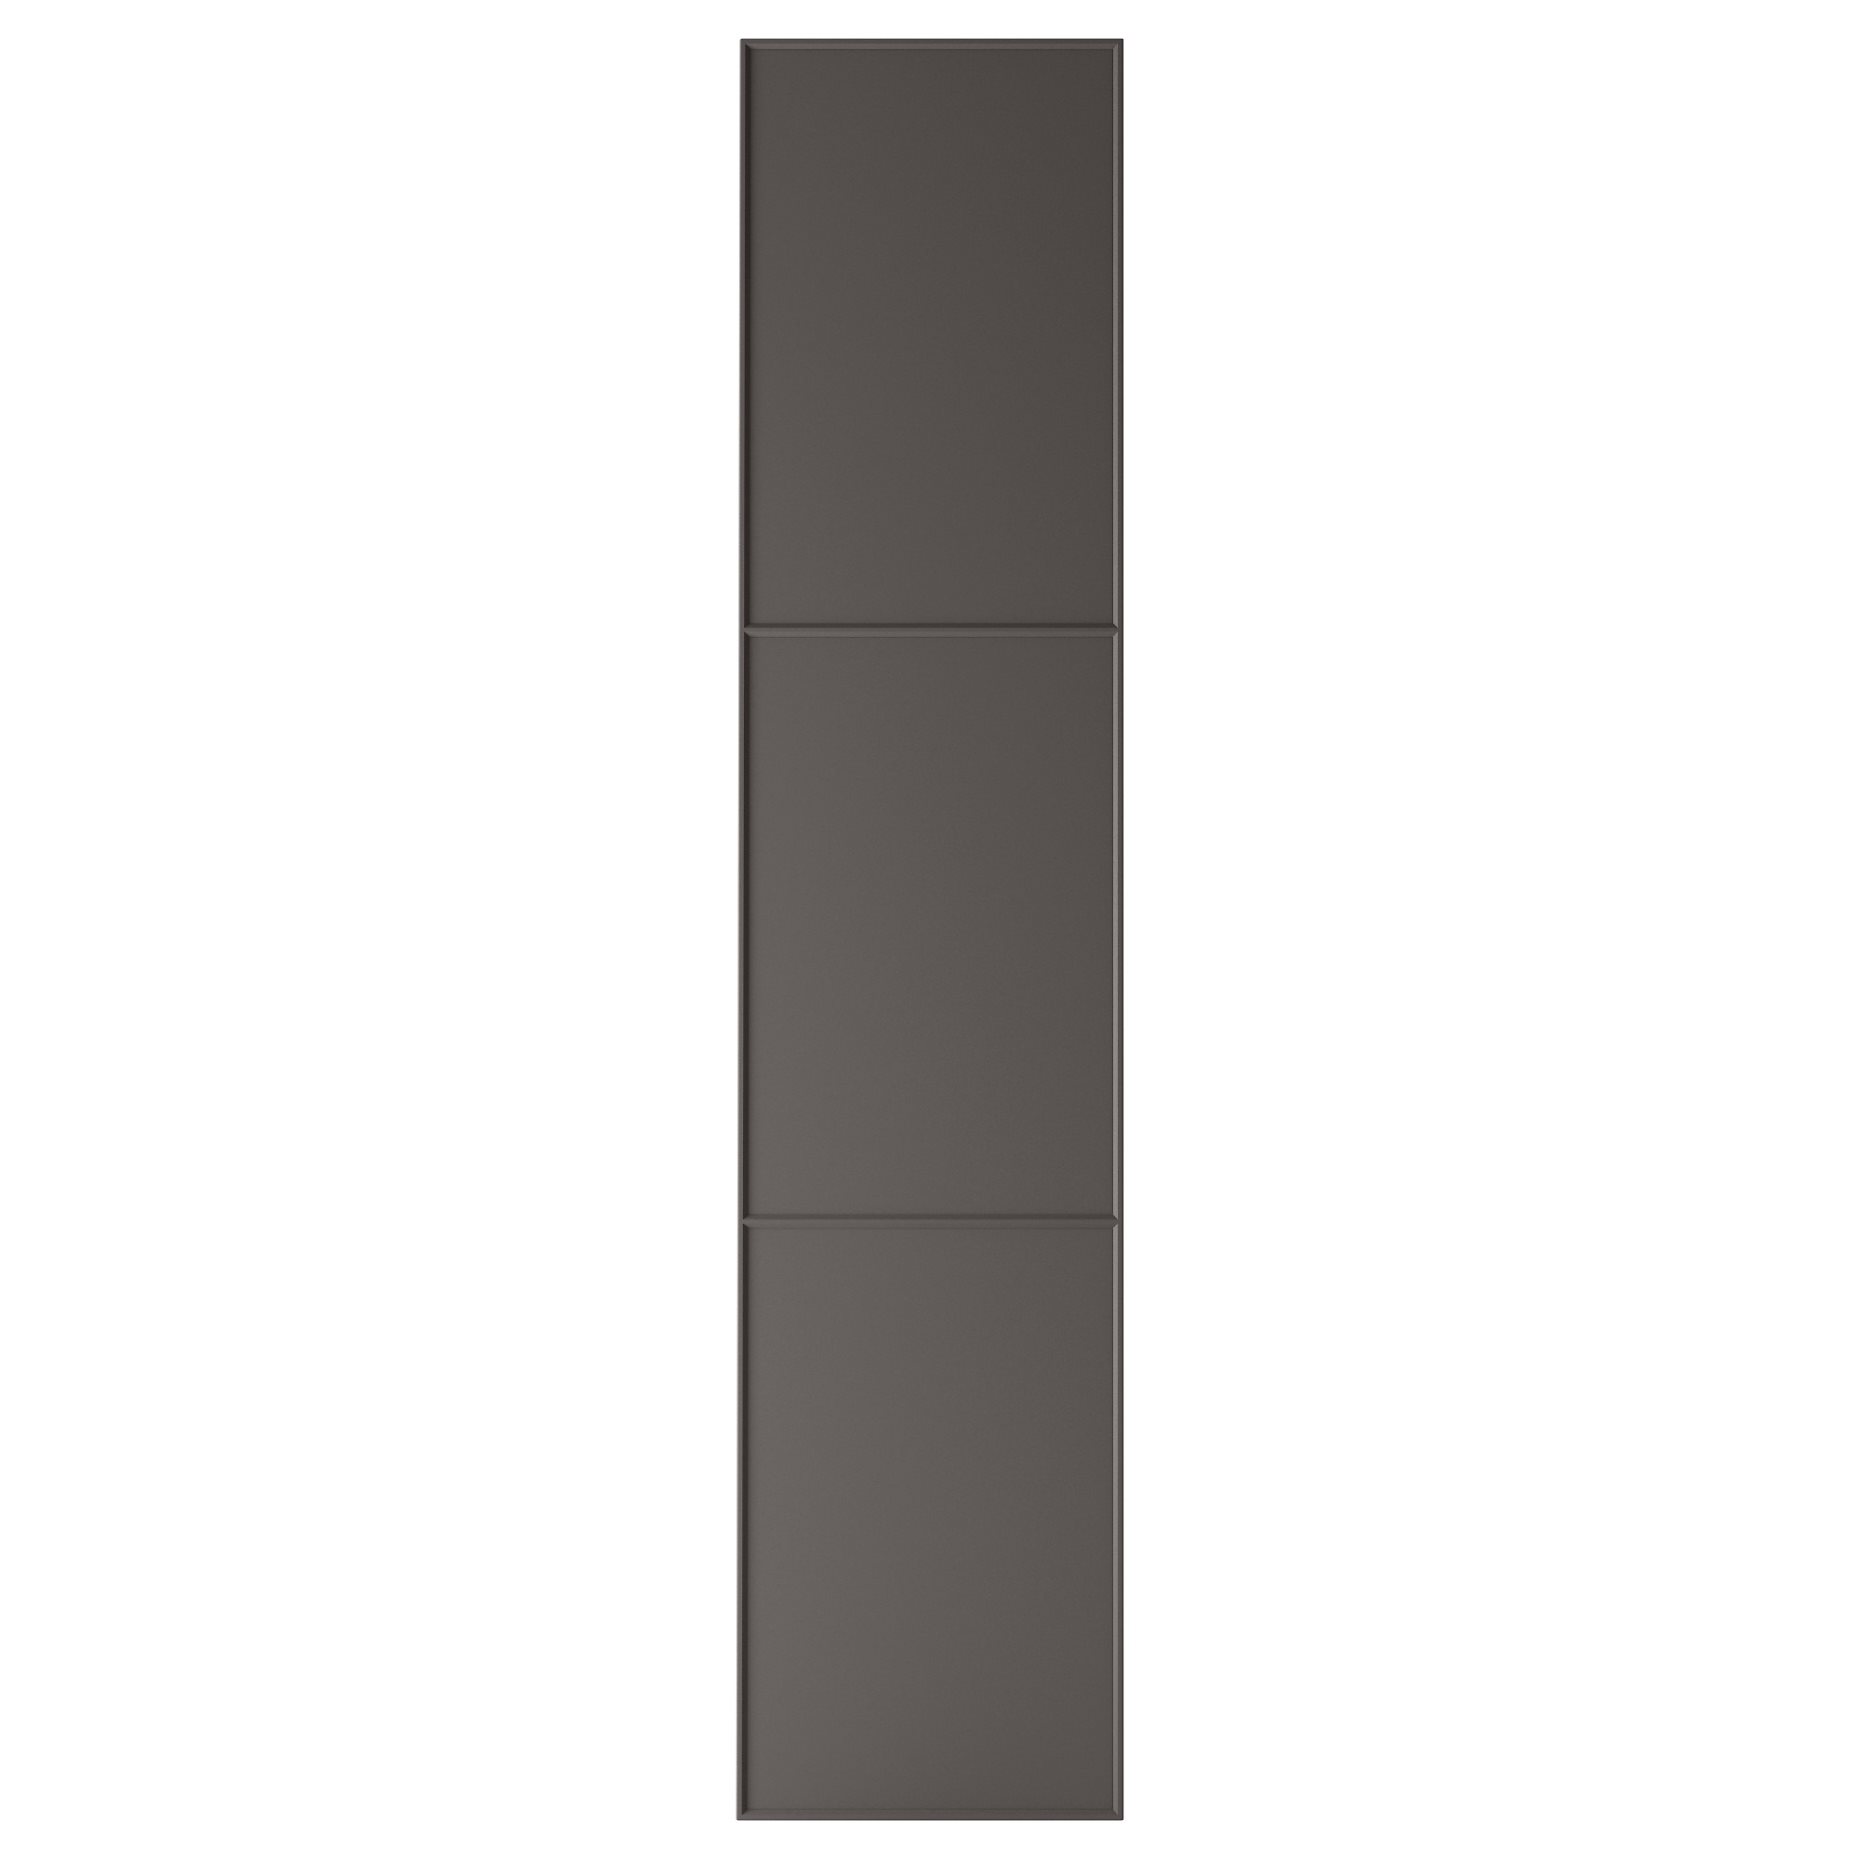 MERÅKER, door with hinges, 50x229 cm, 791.228.24